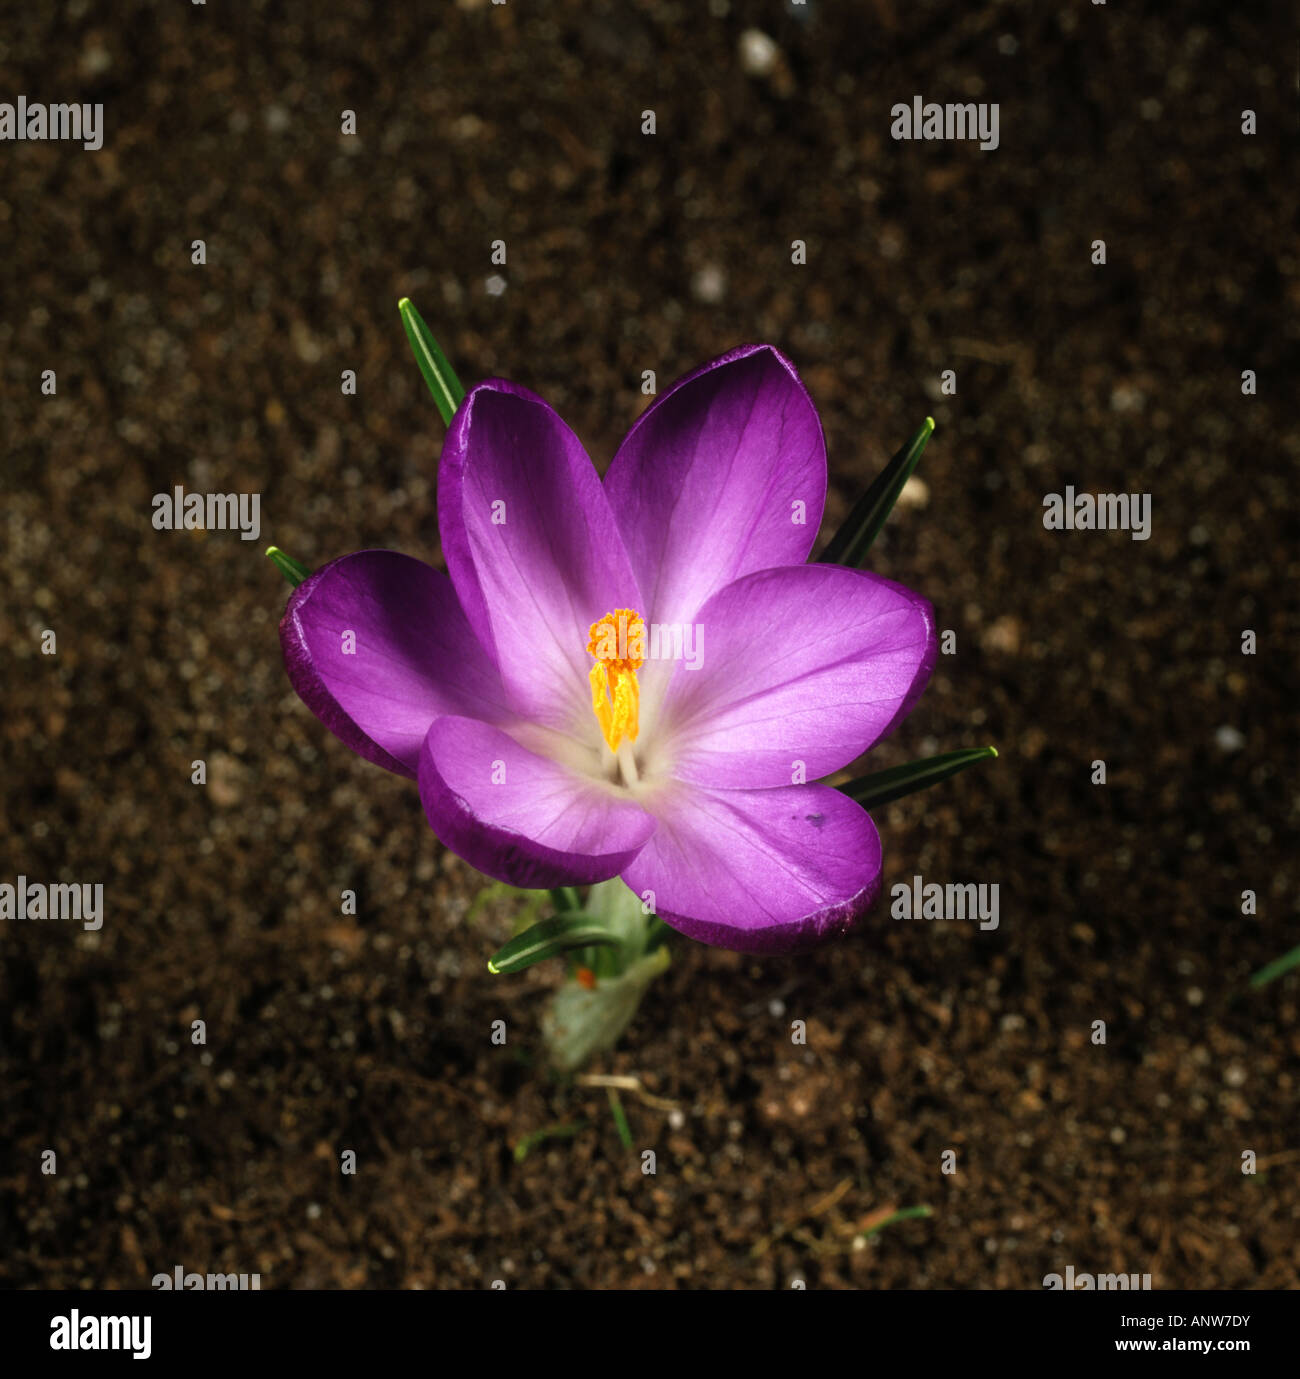 Vierte in einer Reihe von Fotos, auf denen die Eröffnung einer Krokus Blume Stockfoto